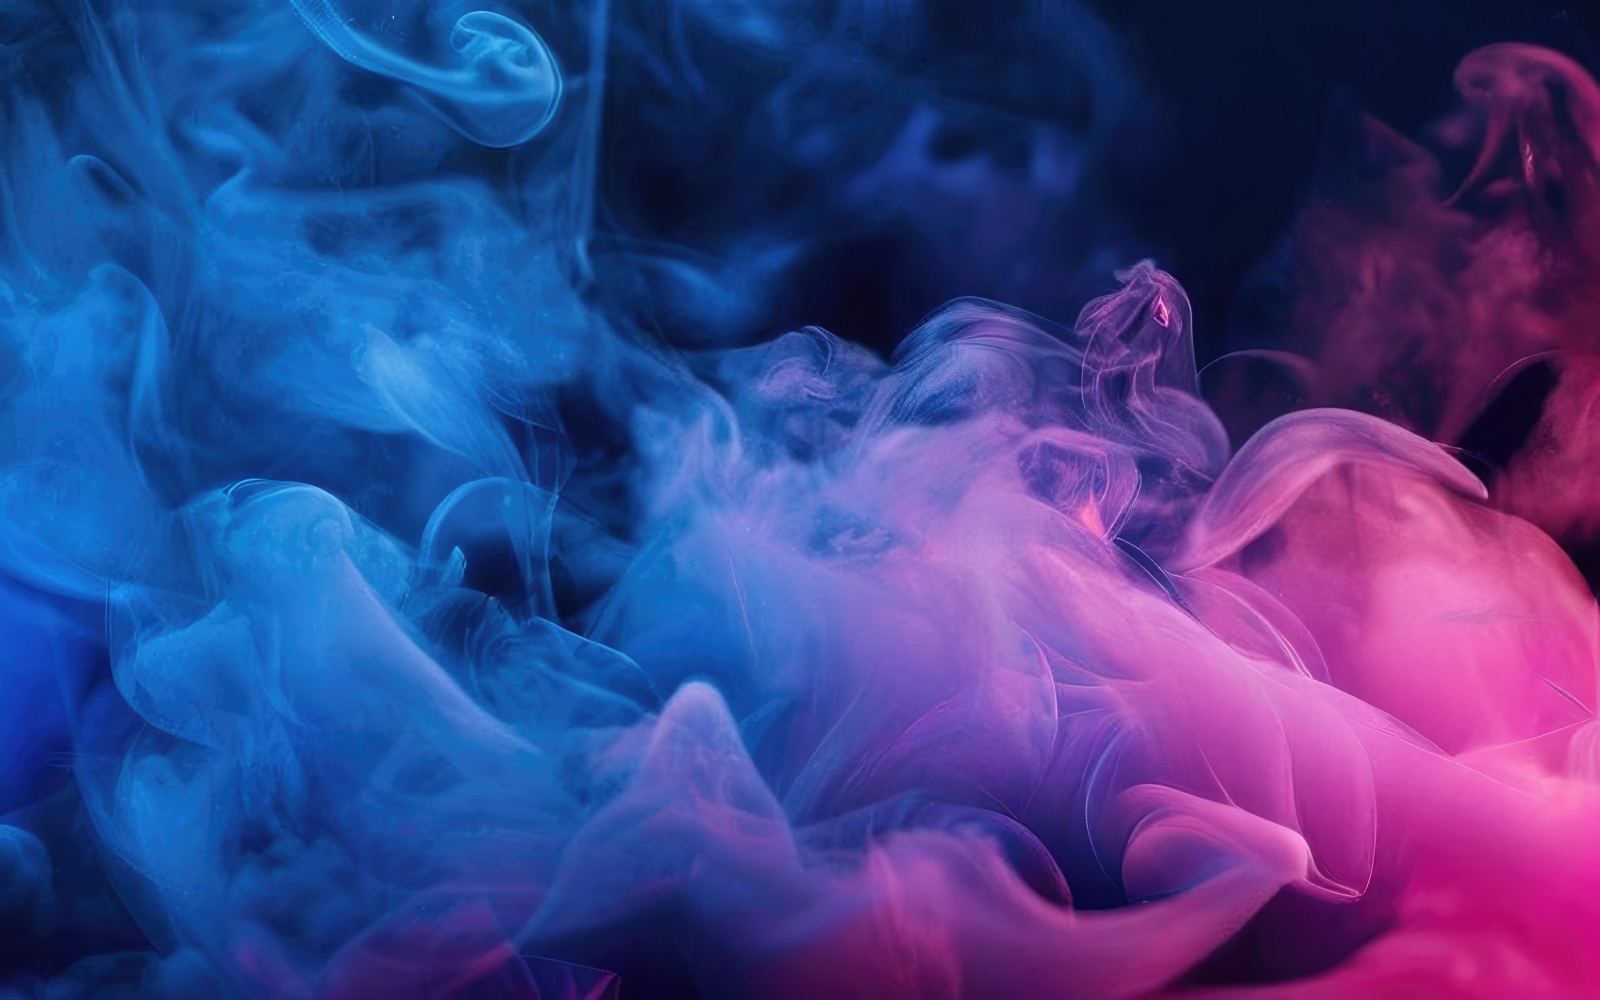 Dark blue and pink color gradient smoke wallpaper background design v18